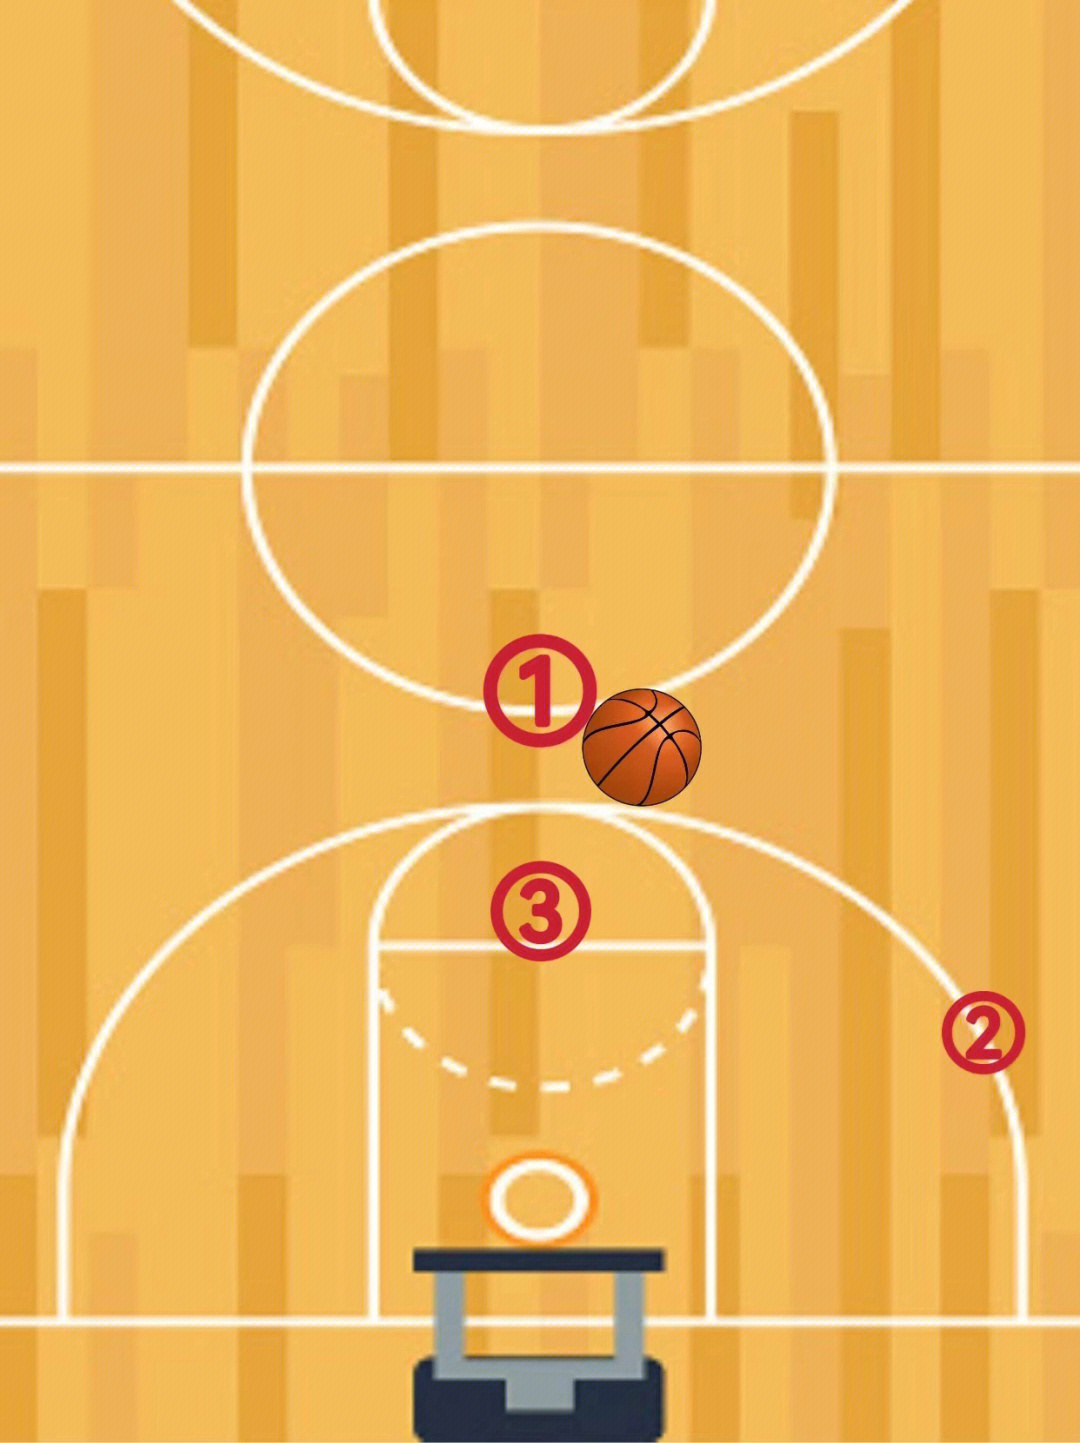 场地须具有一个标准篮球场尺寸的区域,包括一条罚球线(5